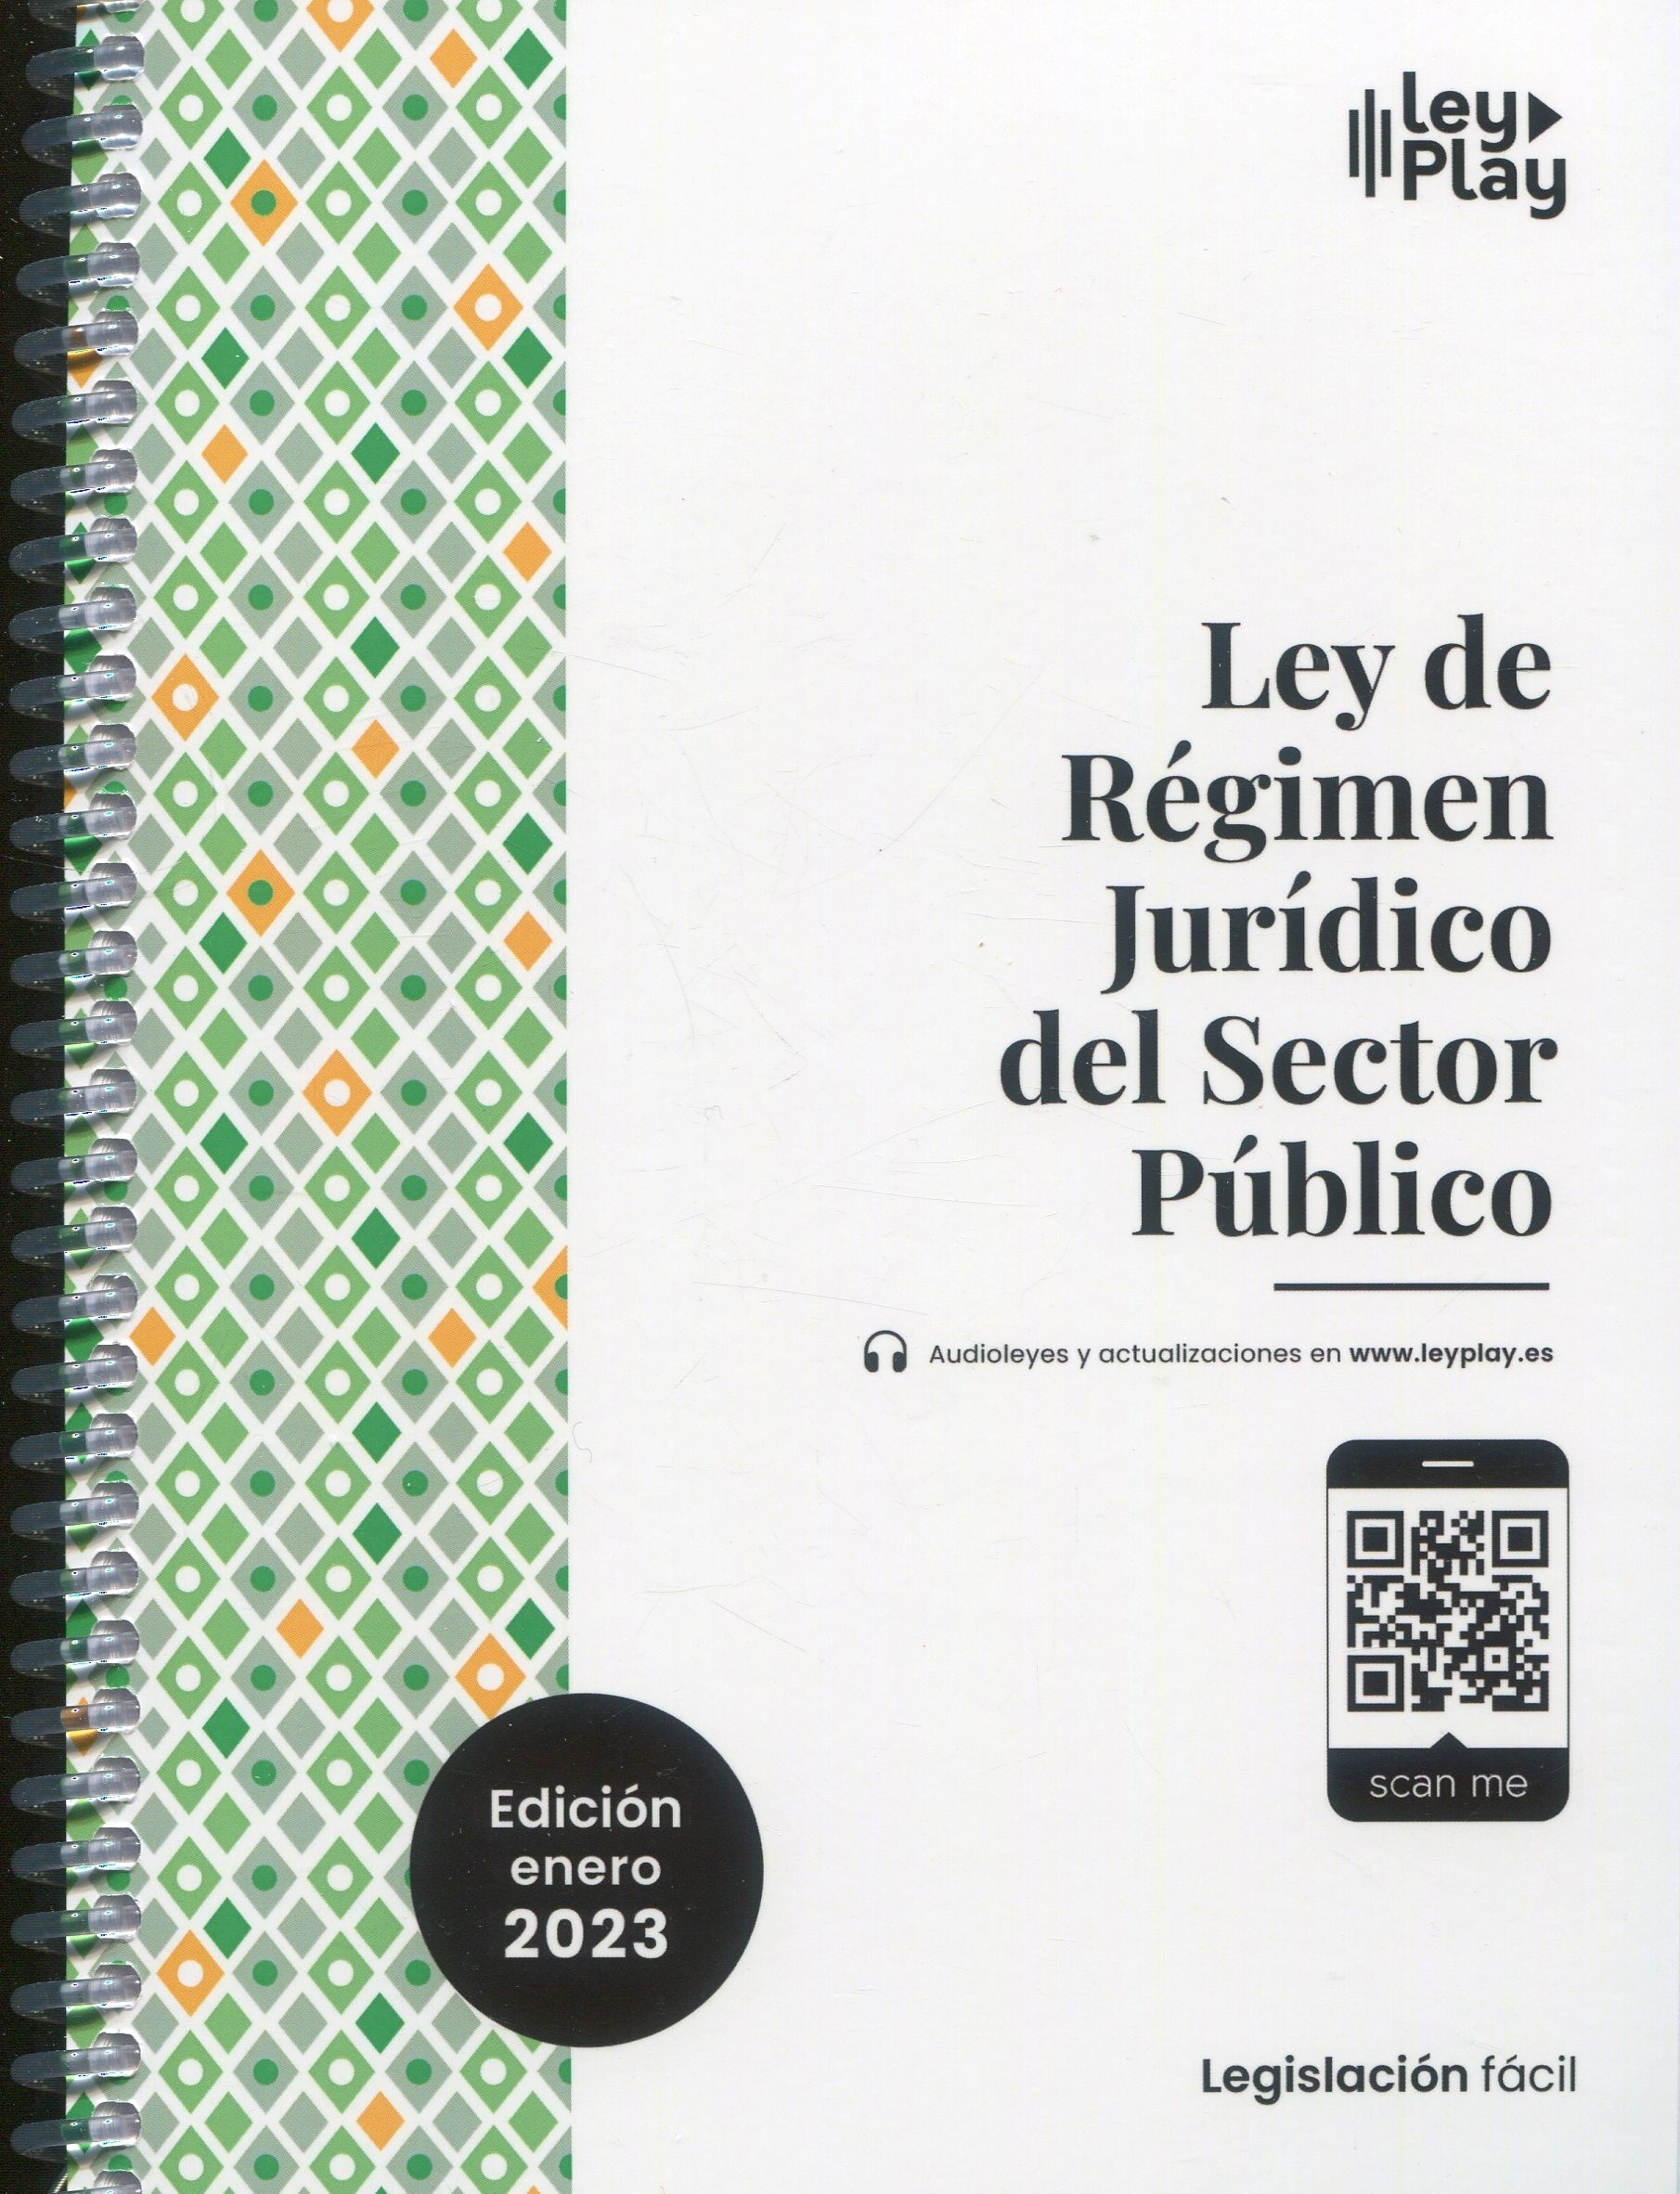 Ley del Régimen Jurídico del Sector Público 2023